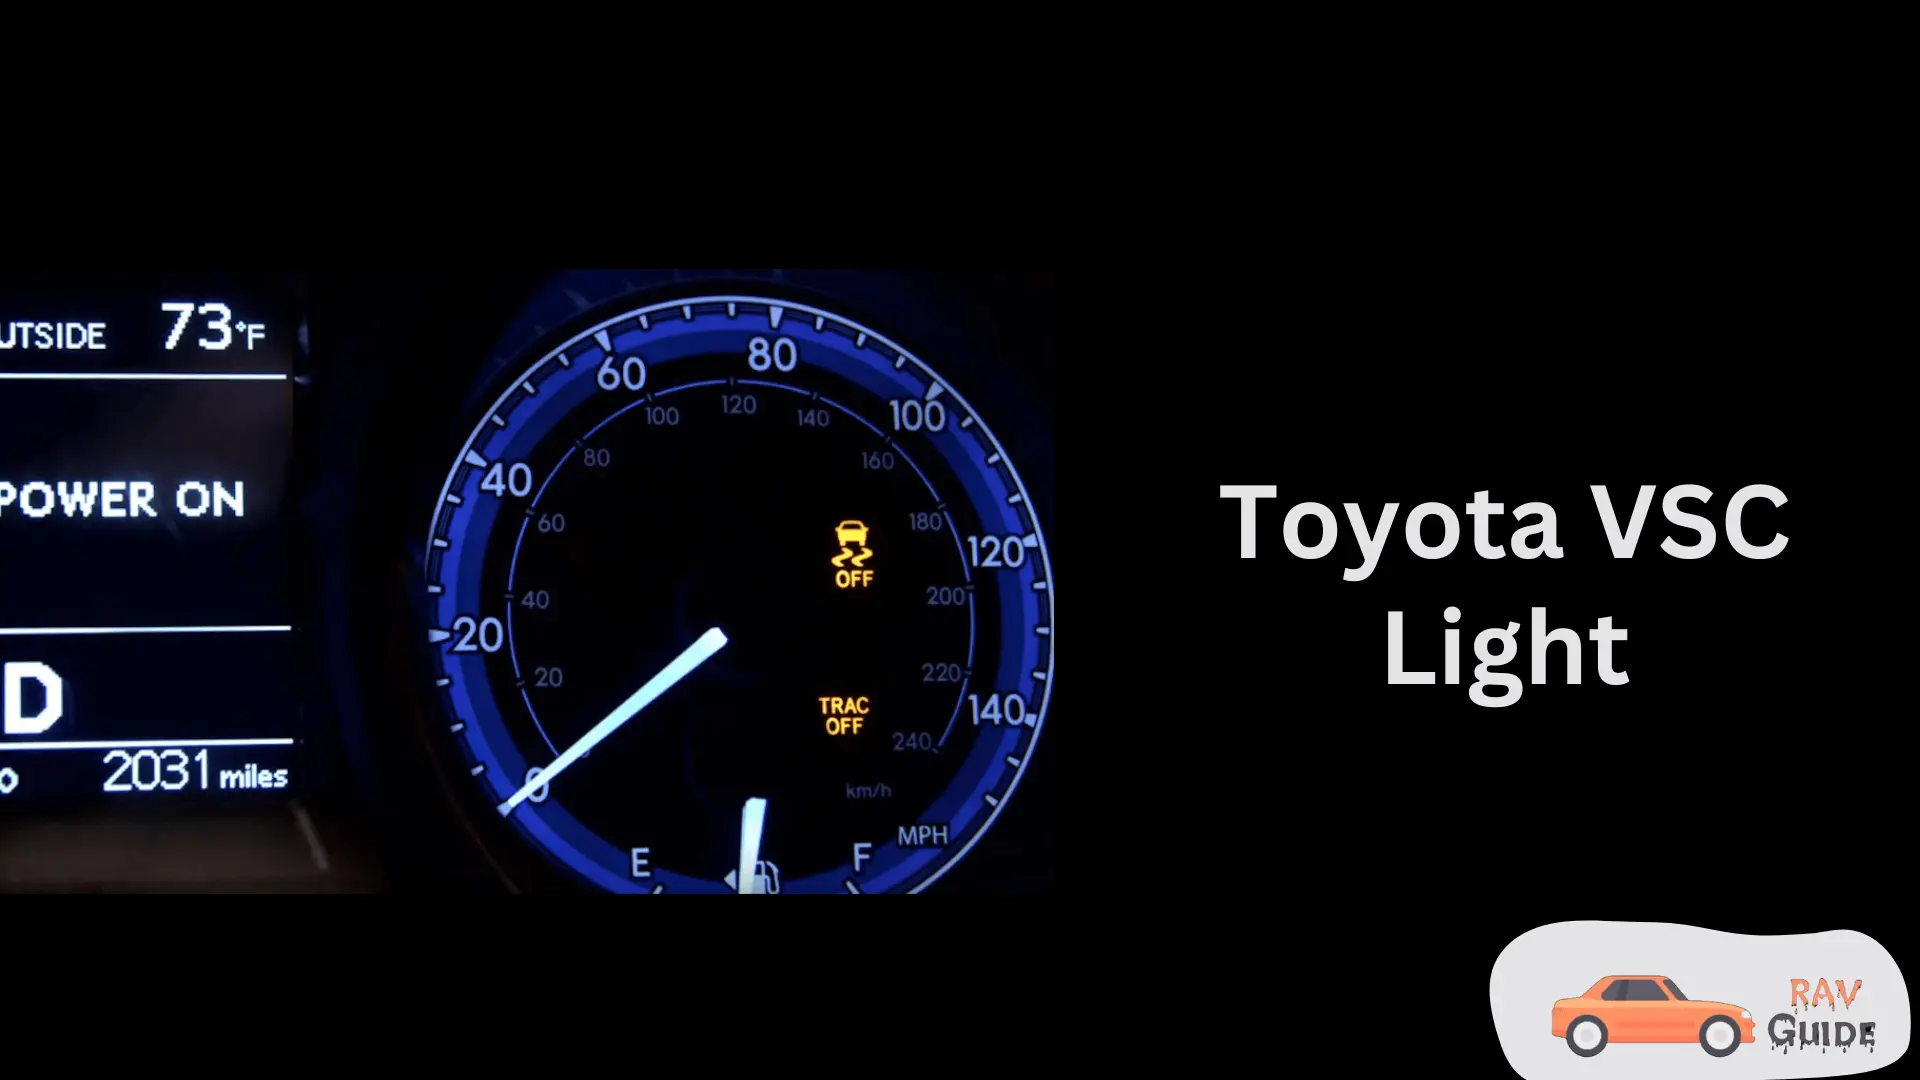 Toyota VSC Light